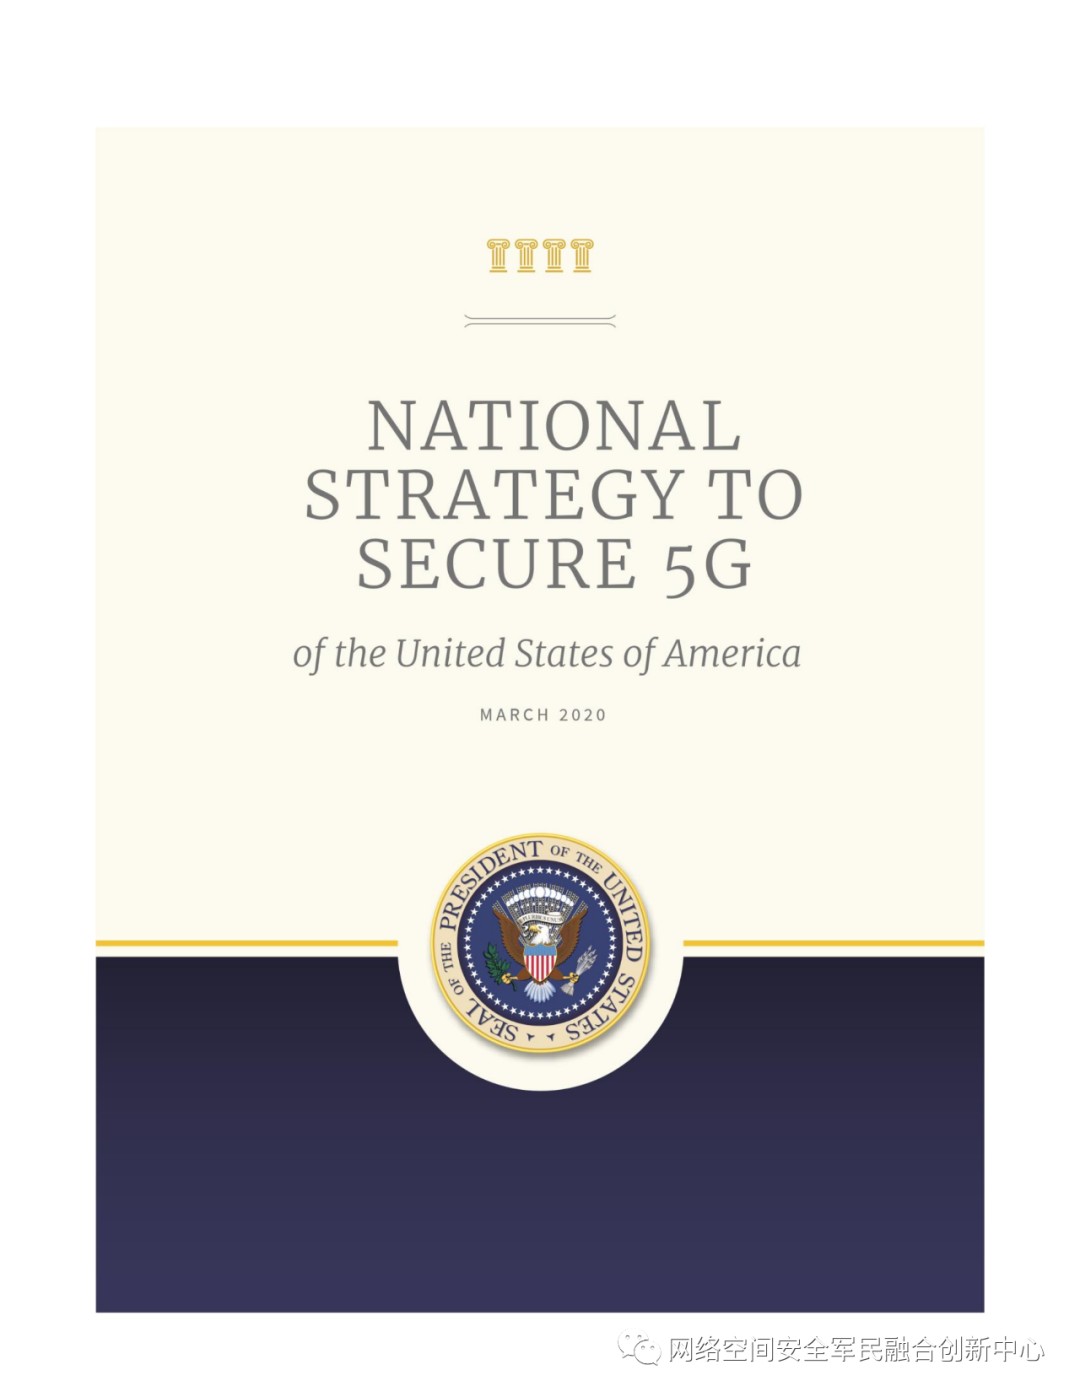 一文看懂美国新版《国家安全战略》中的网络安全 - 安全内参 | 决策者的网络安全知识库